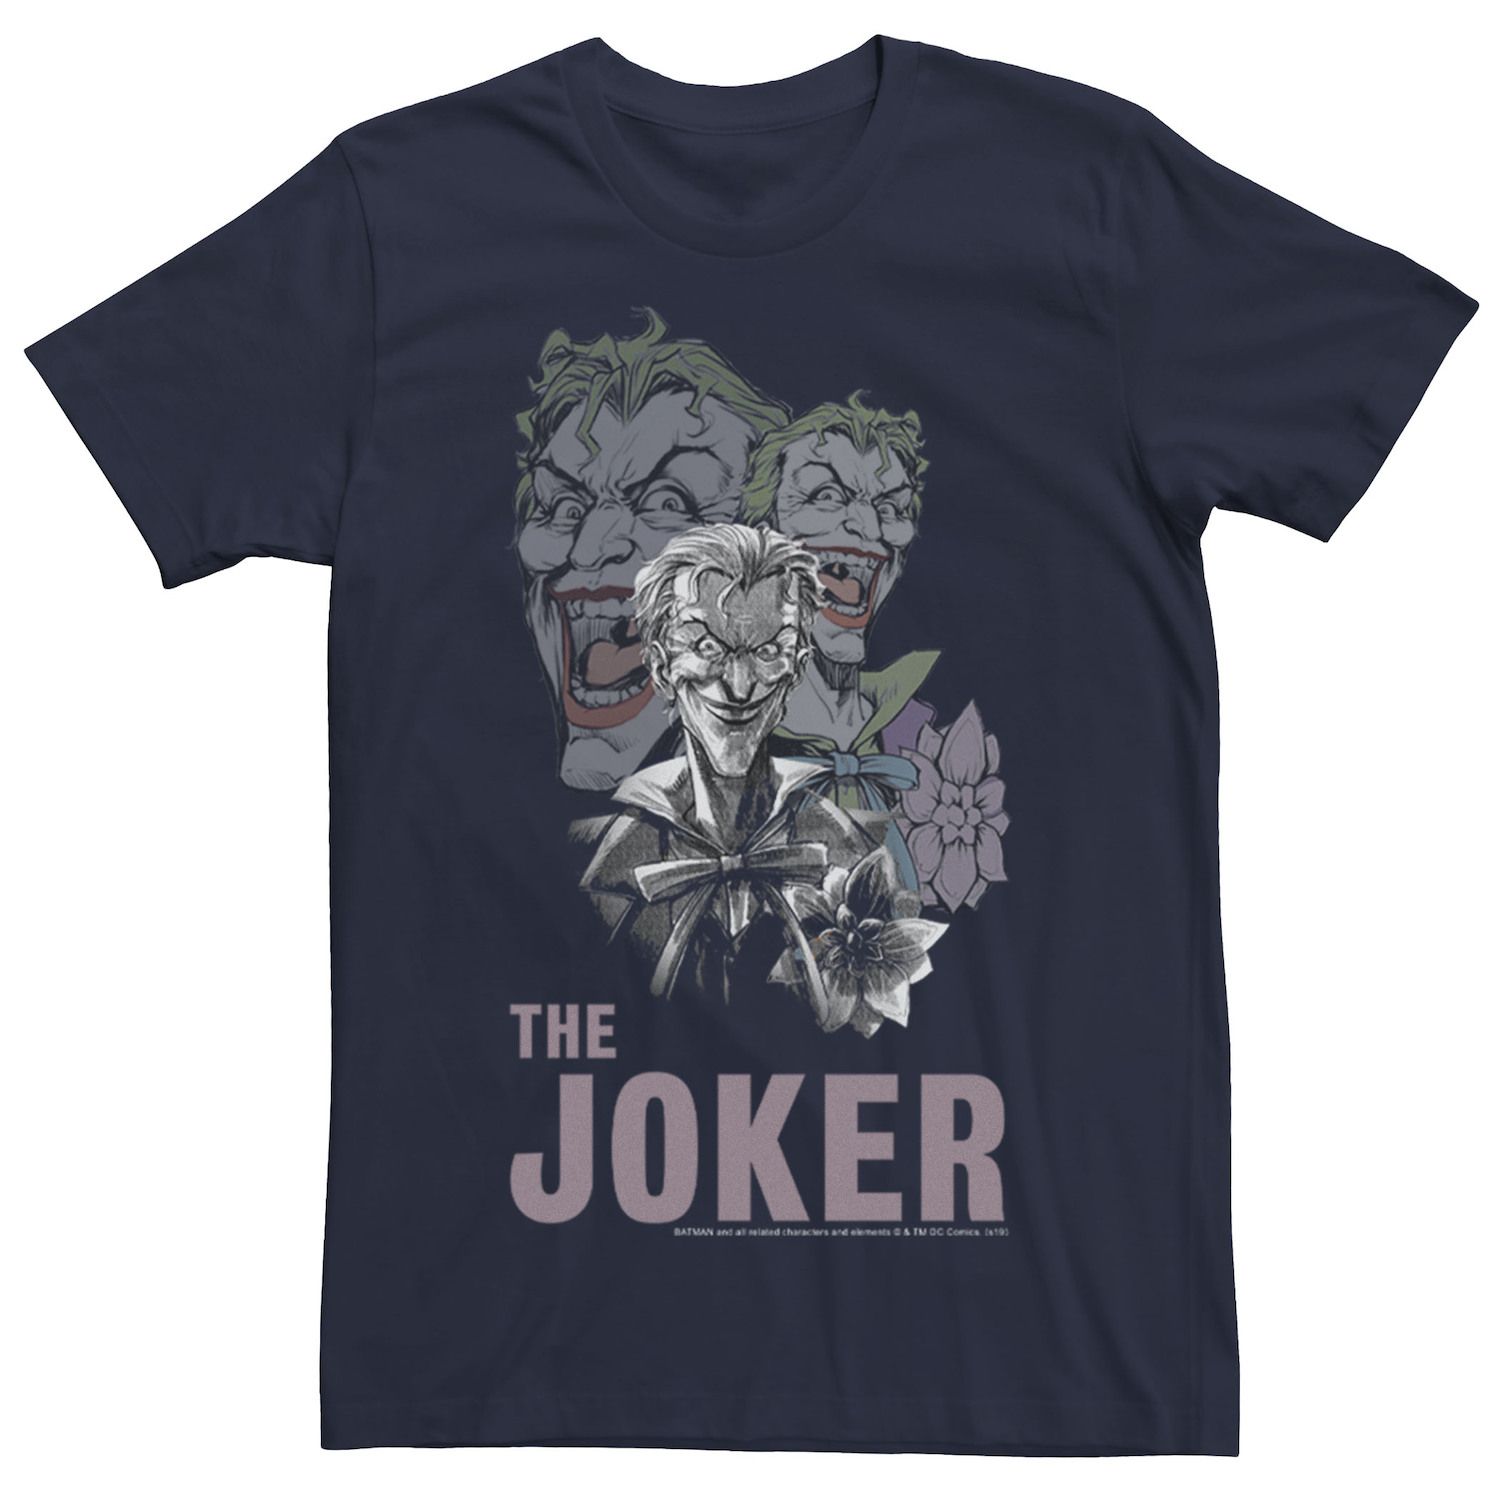 цена Мужская футболка с коллажем The Joker, Синяя DC Comics, синий